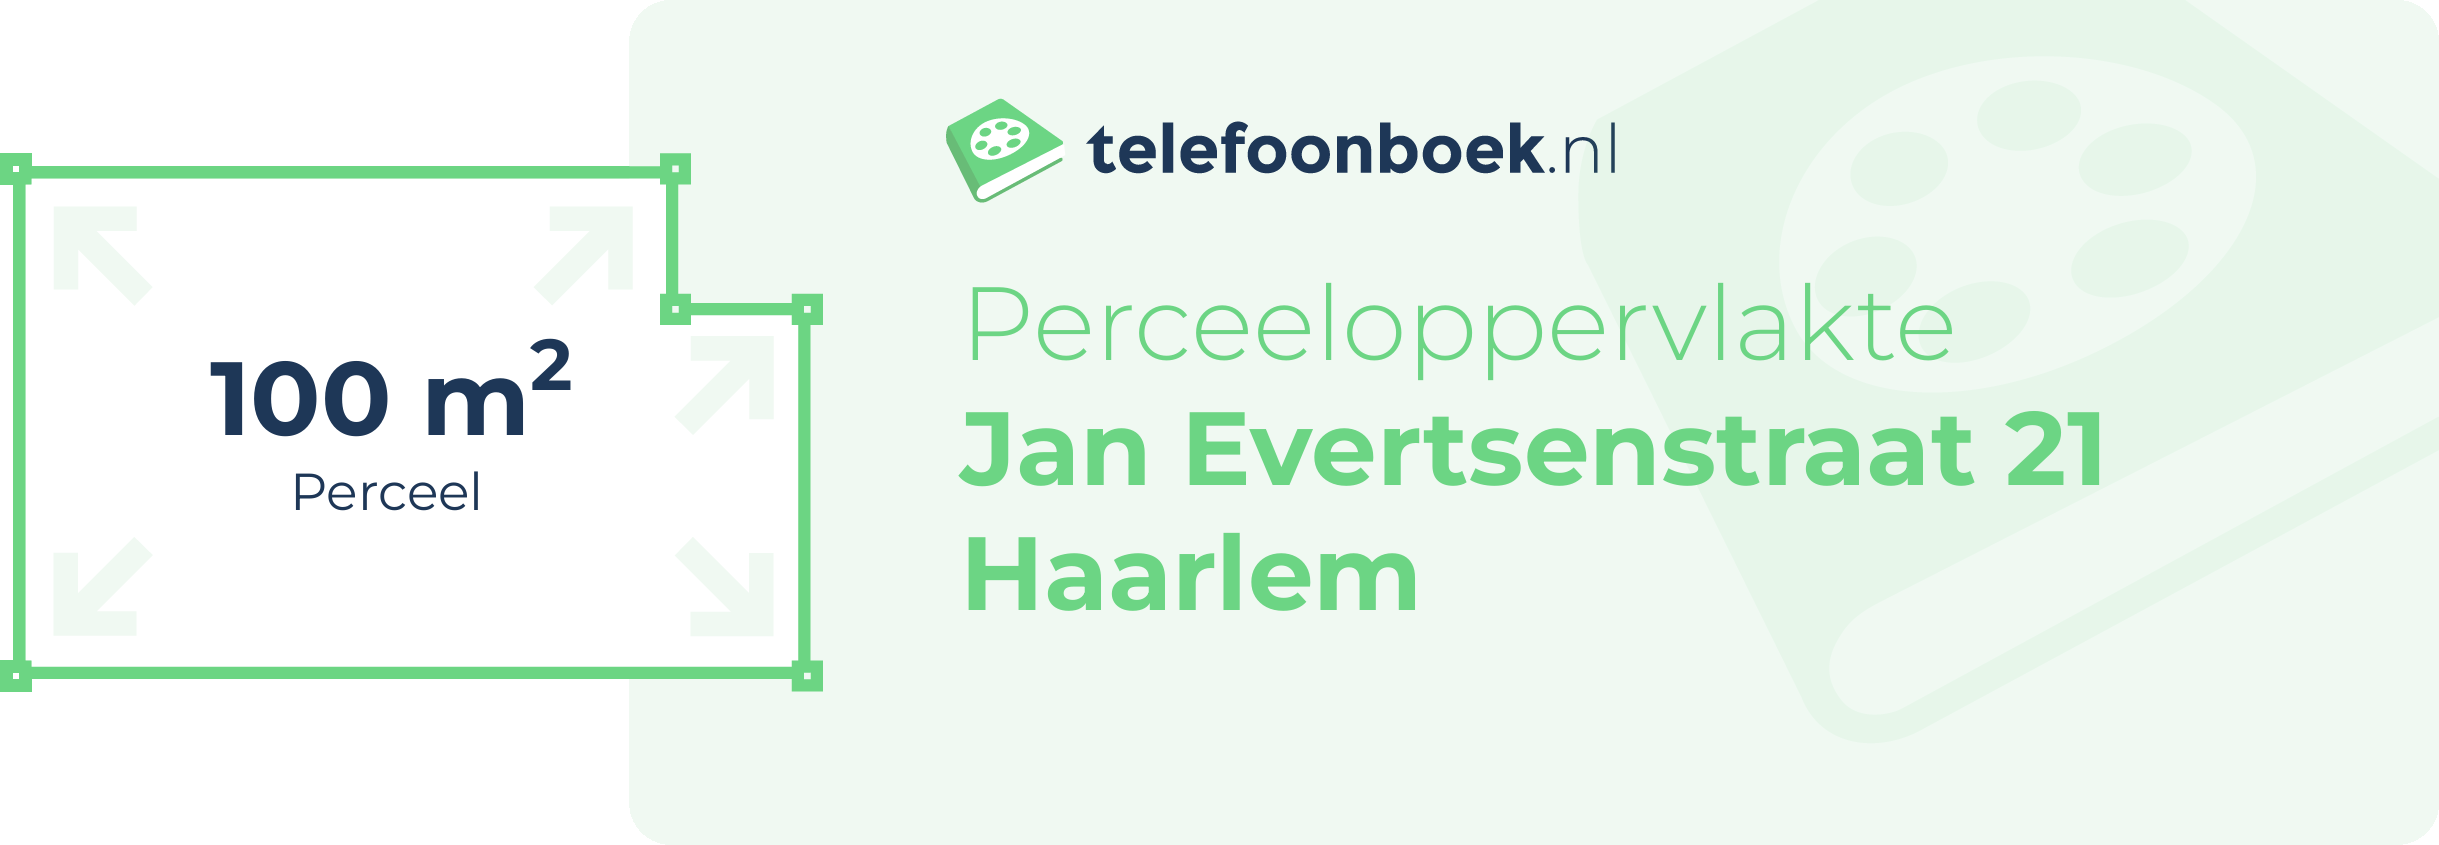 Perceeloppervlakte Jan Evertsenstraat 21 Haarlem